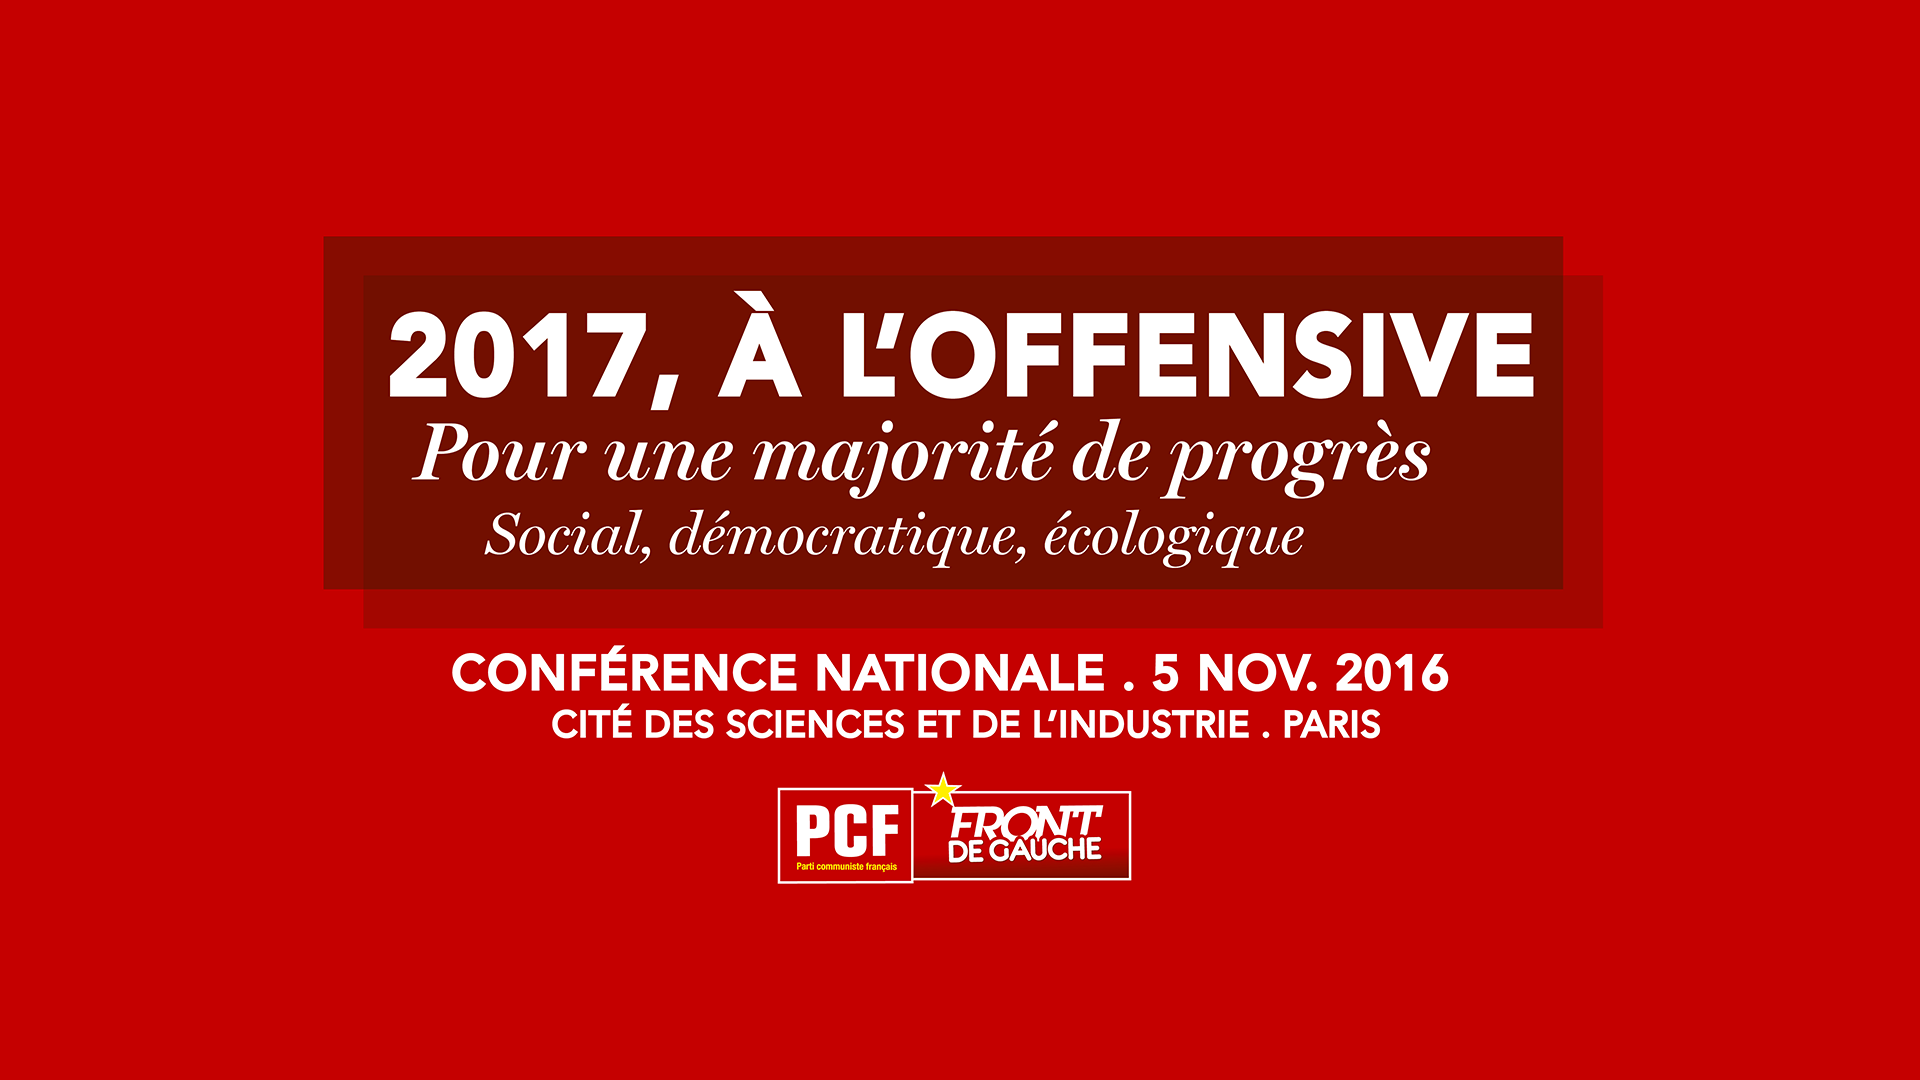 Pour revoir les travaux de la Conférence nationale du PCF